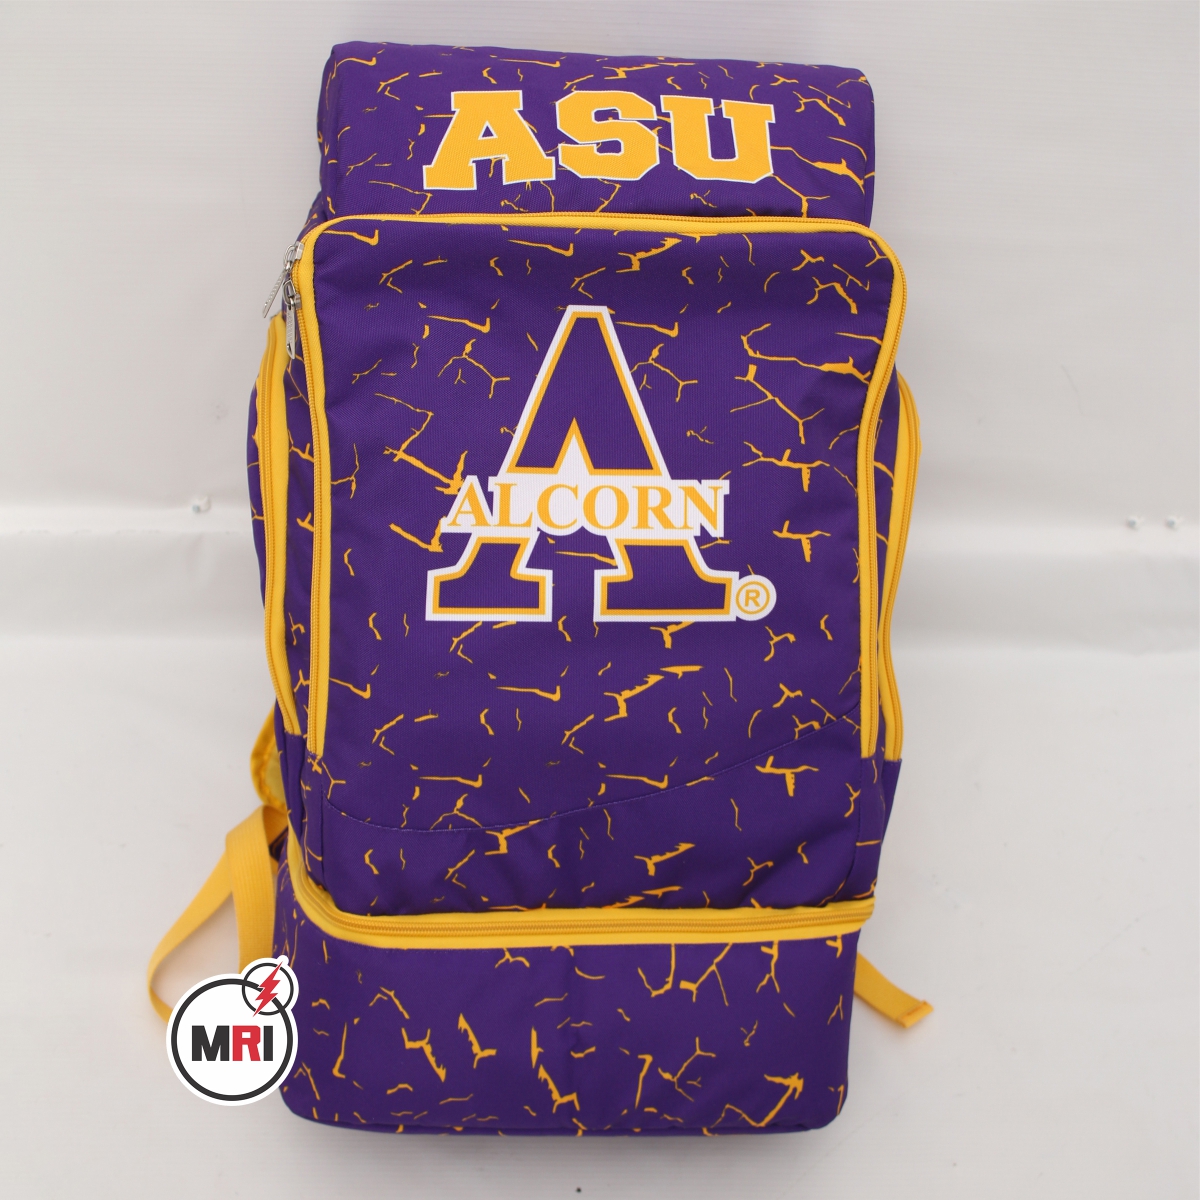 Alcorn State University Sublimation Customized Backpack | ASU Sublimated Backpack